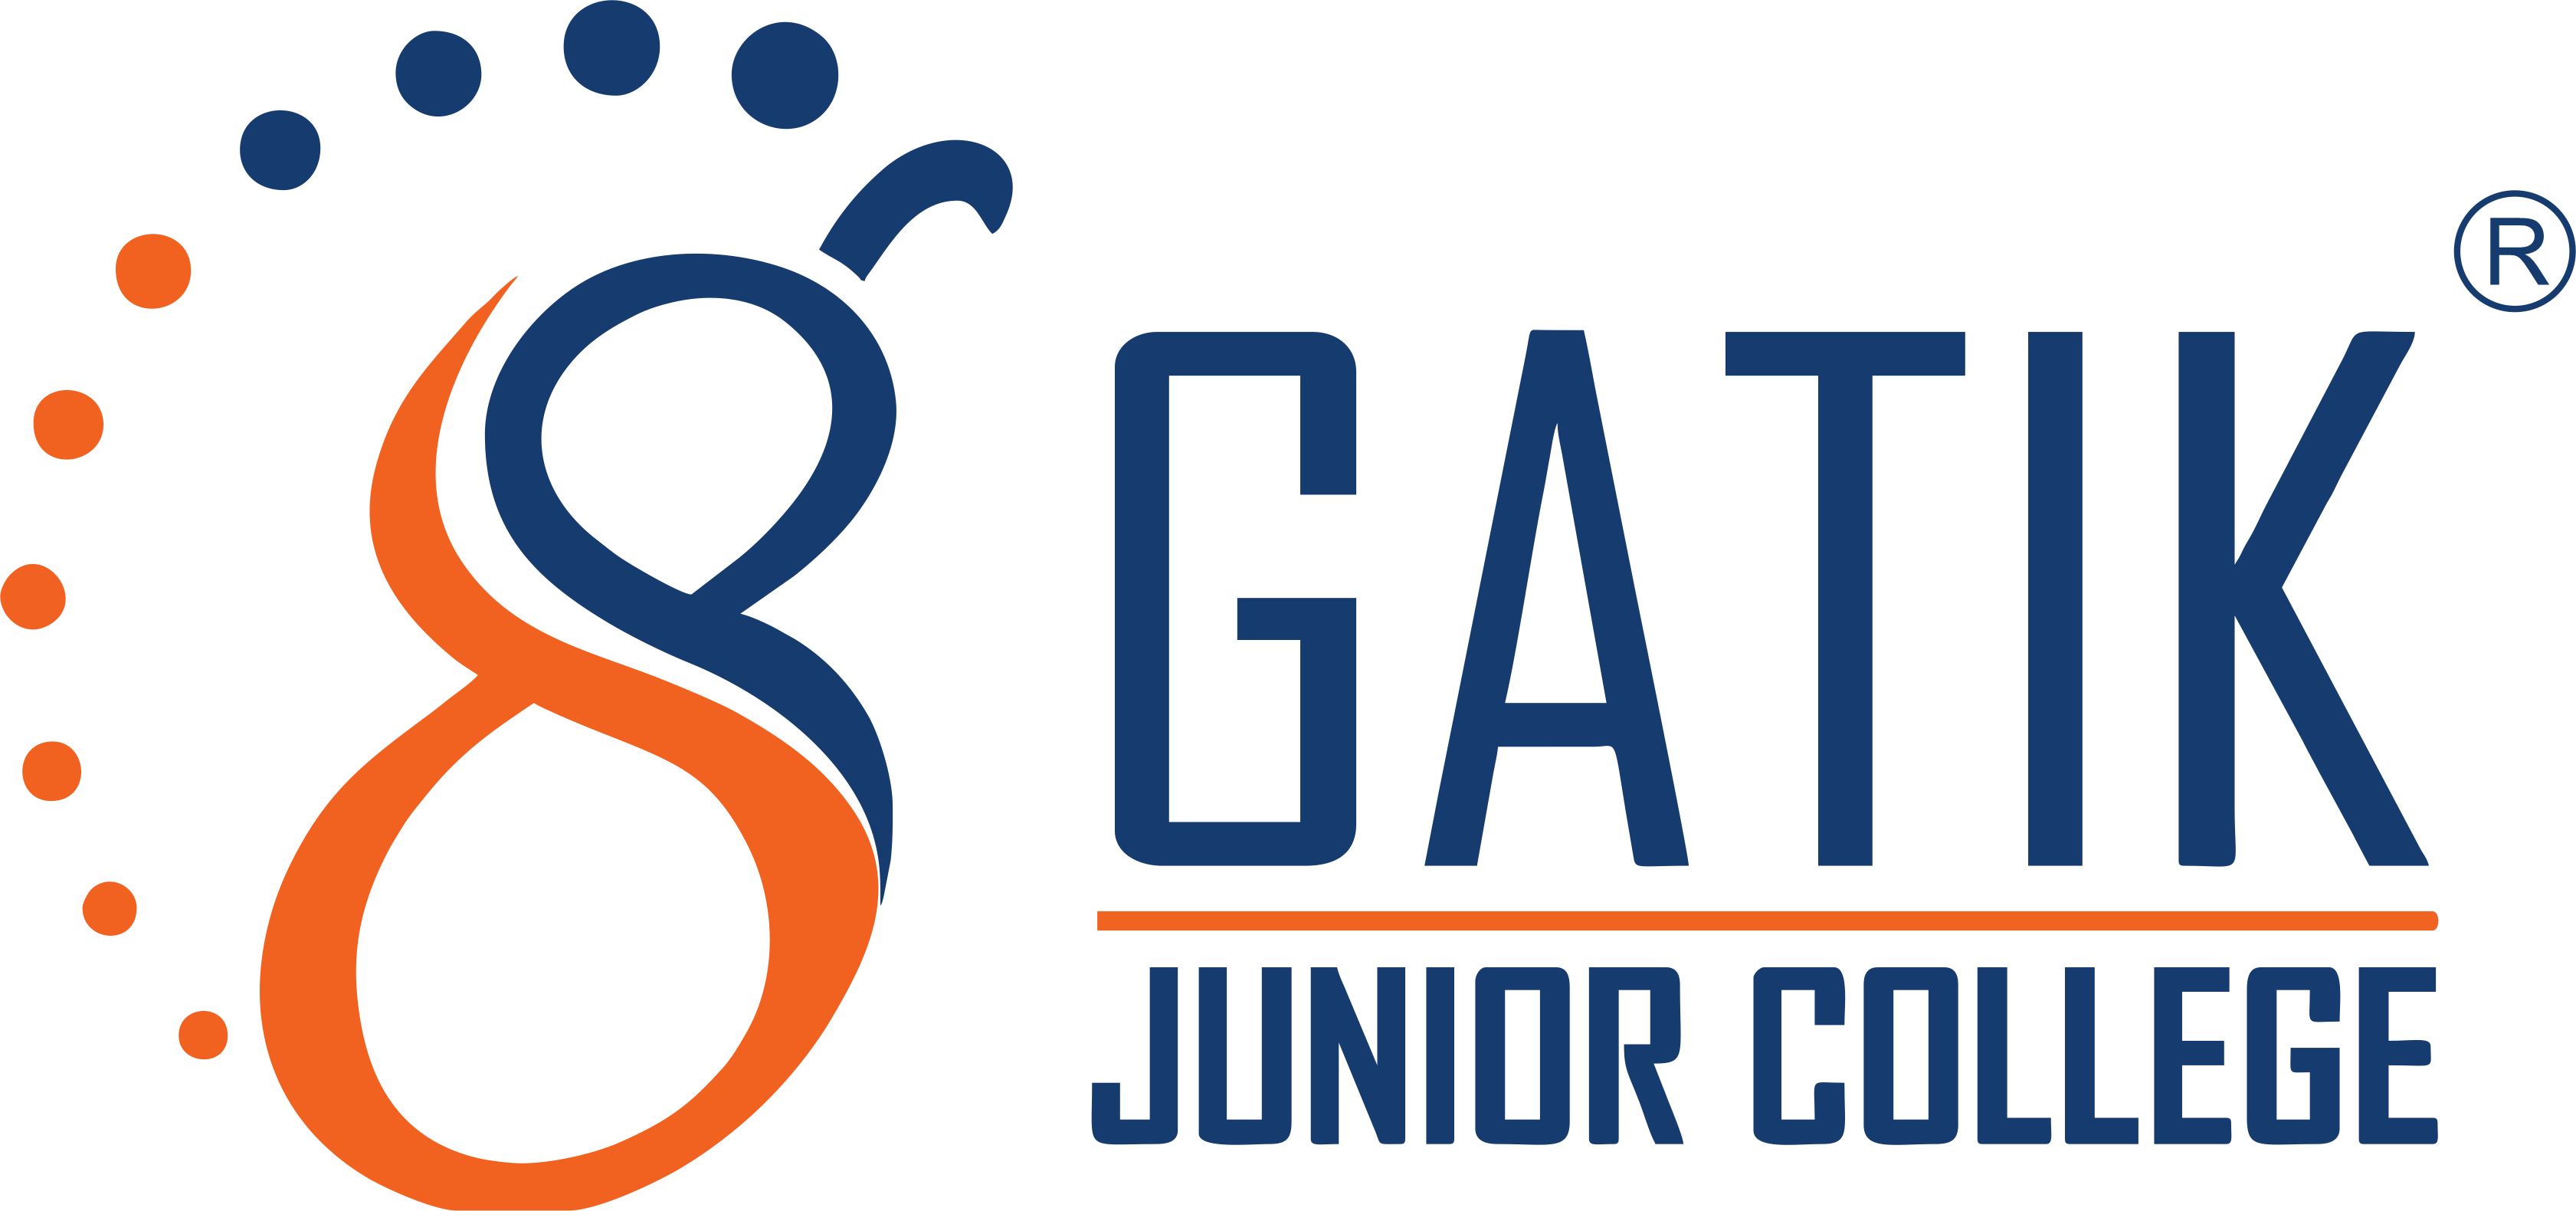 Gatik Junior College